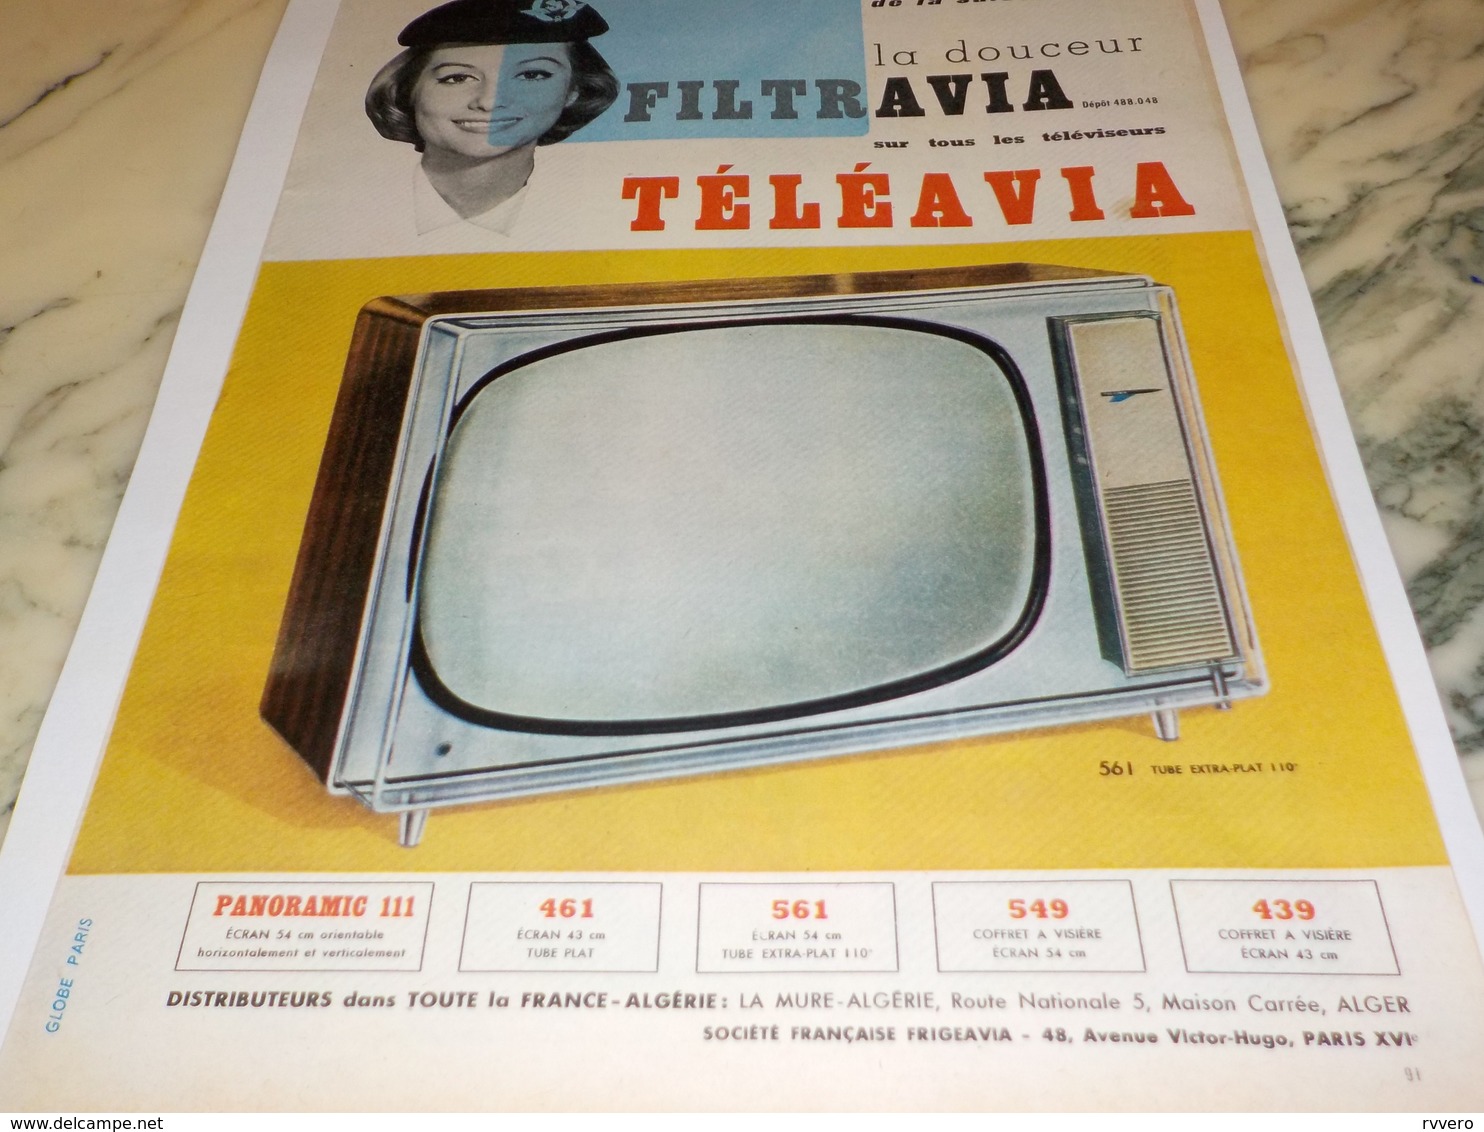 ANCIENNE PUBLICITE TELEVISION TELEAVIA  1960 - Fernsehgeräte